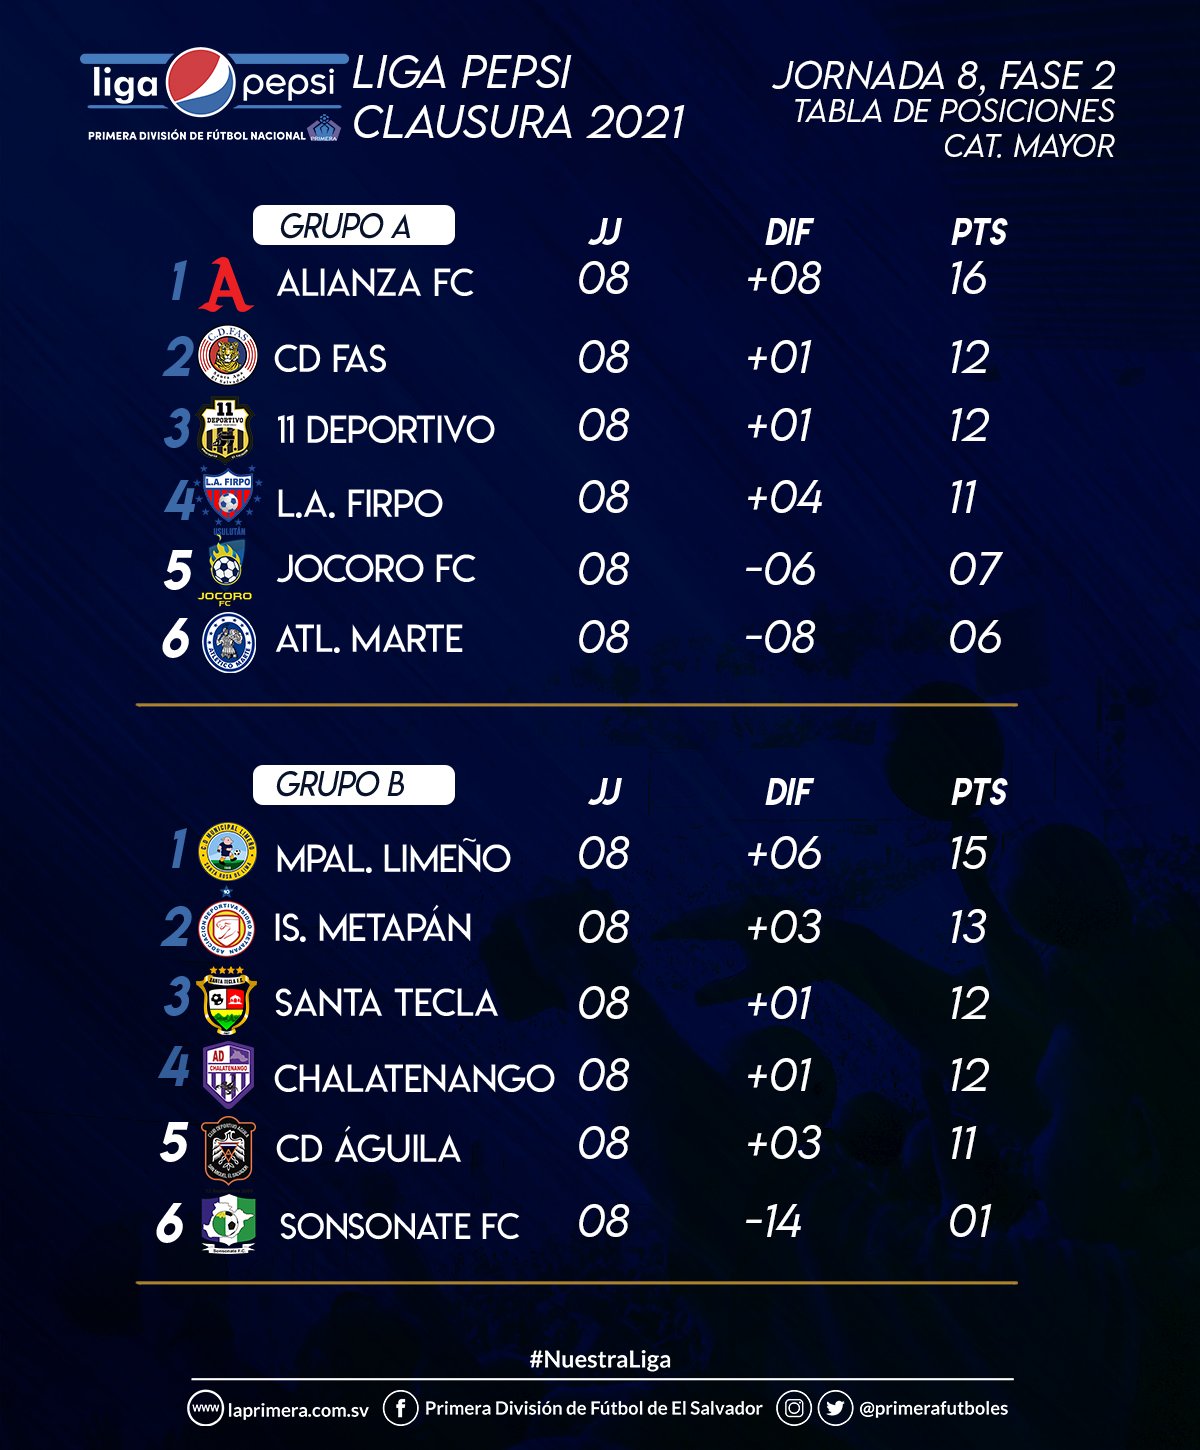 UNCAF / Oficial on Twitter: "Así se encuentra la tabla de posiciones del  Torneo Clausura 2021 de la Primera División del fútbol de El Salvador, tras  haber jugado la jornada 8 de